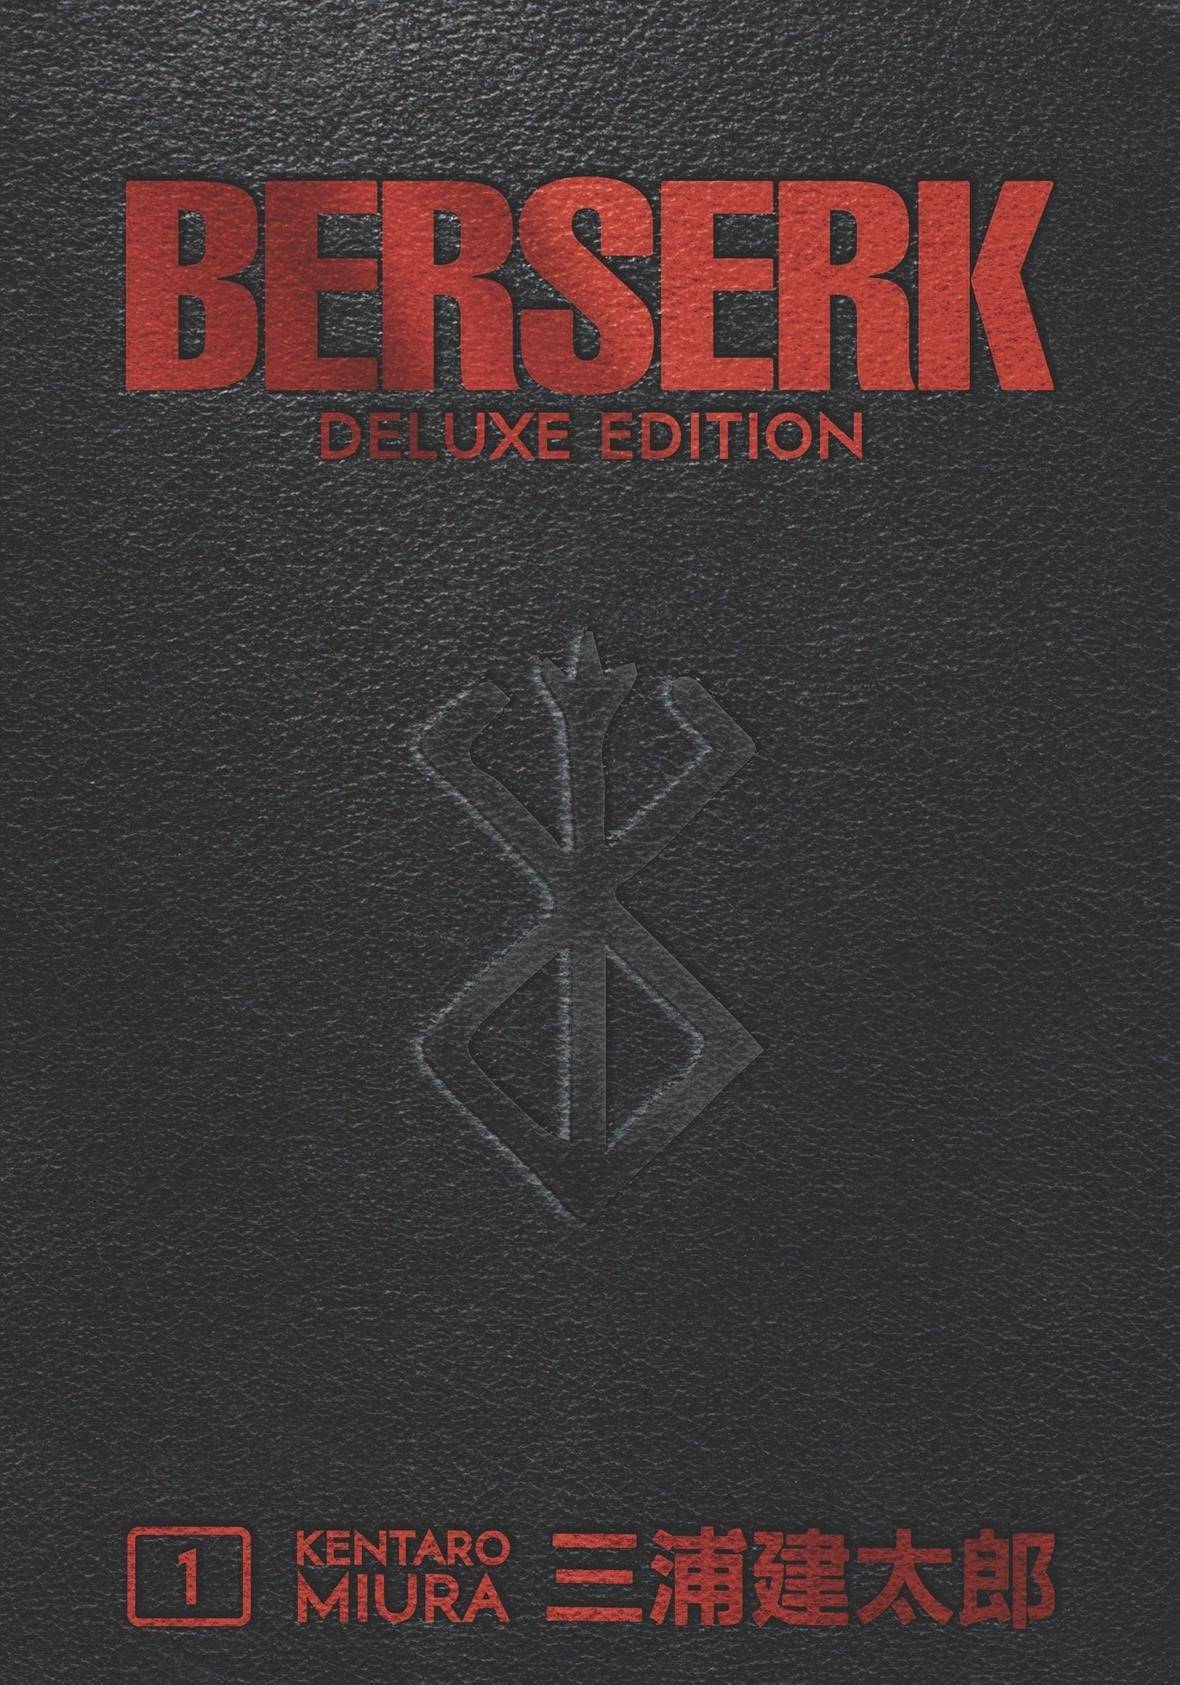 BERSERK DELUXE EDITION HC VOL 01 (MR)